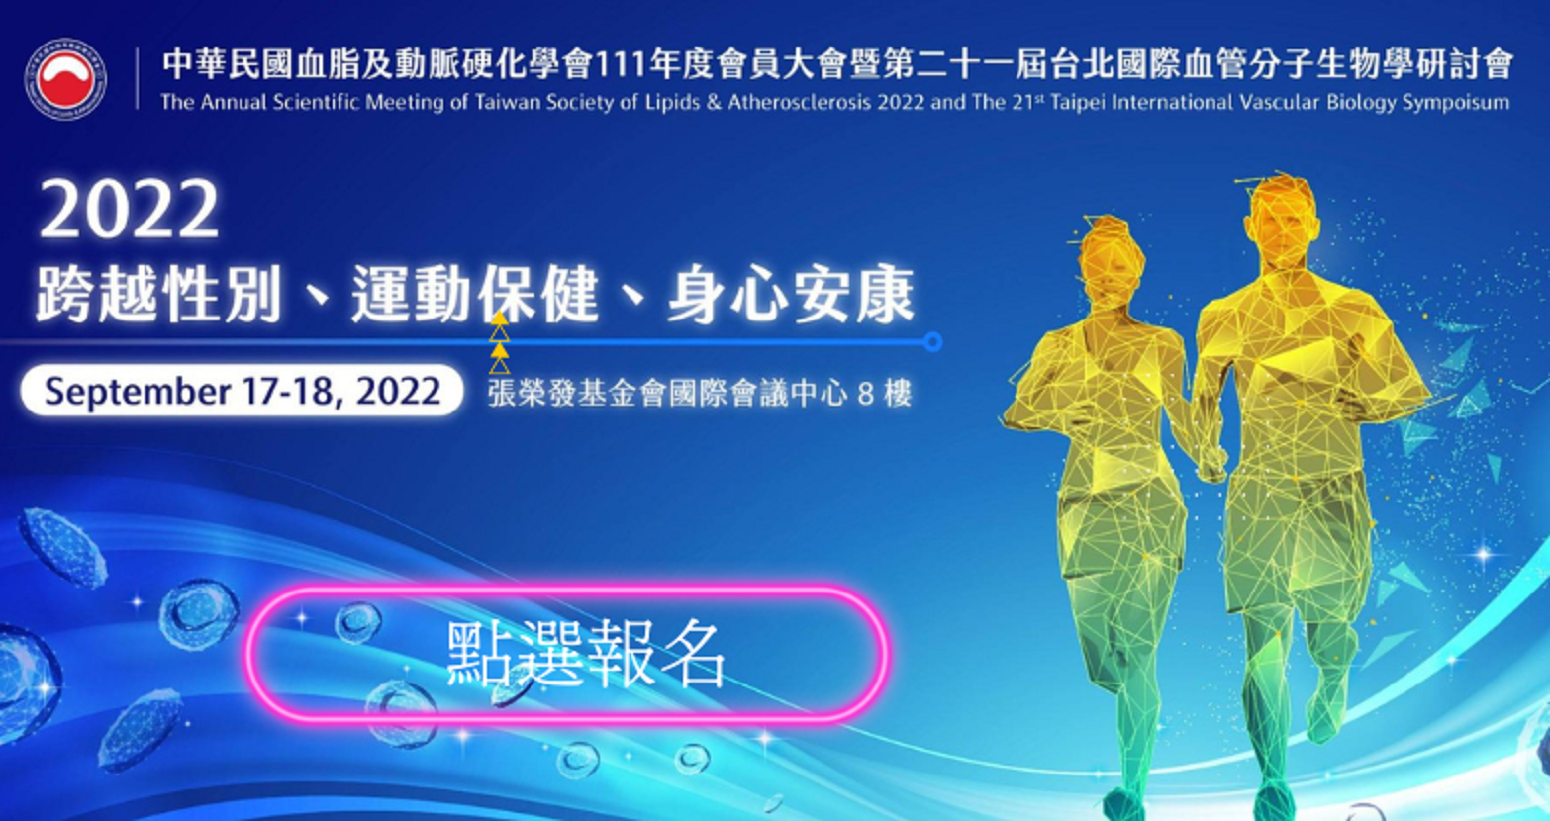 中華民國血脂及動脈硬化學會111年度會員大會暨第二十一屆台北國際血管分子生物學研討會